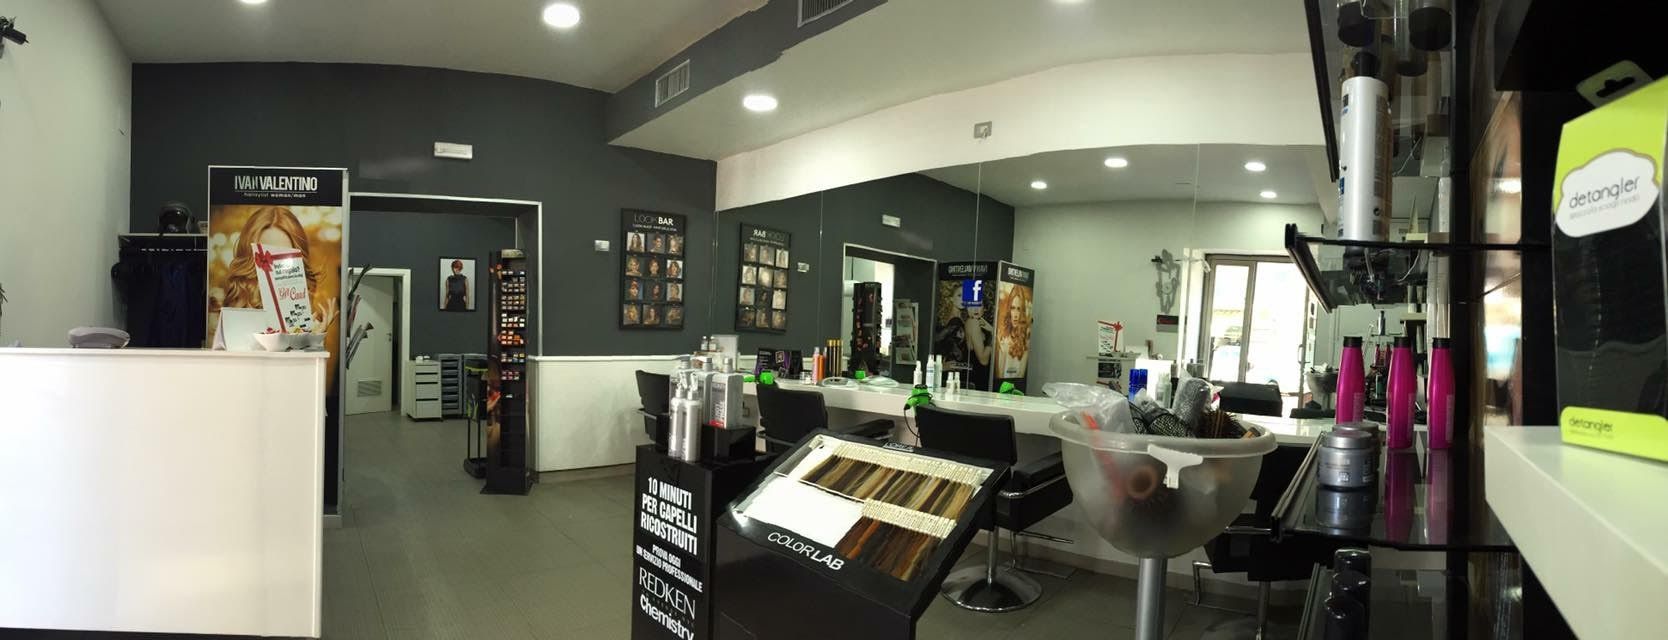 I parrucchieri migliori di Napoli: Ivan Valentino Hairstylist